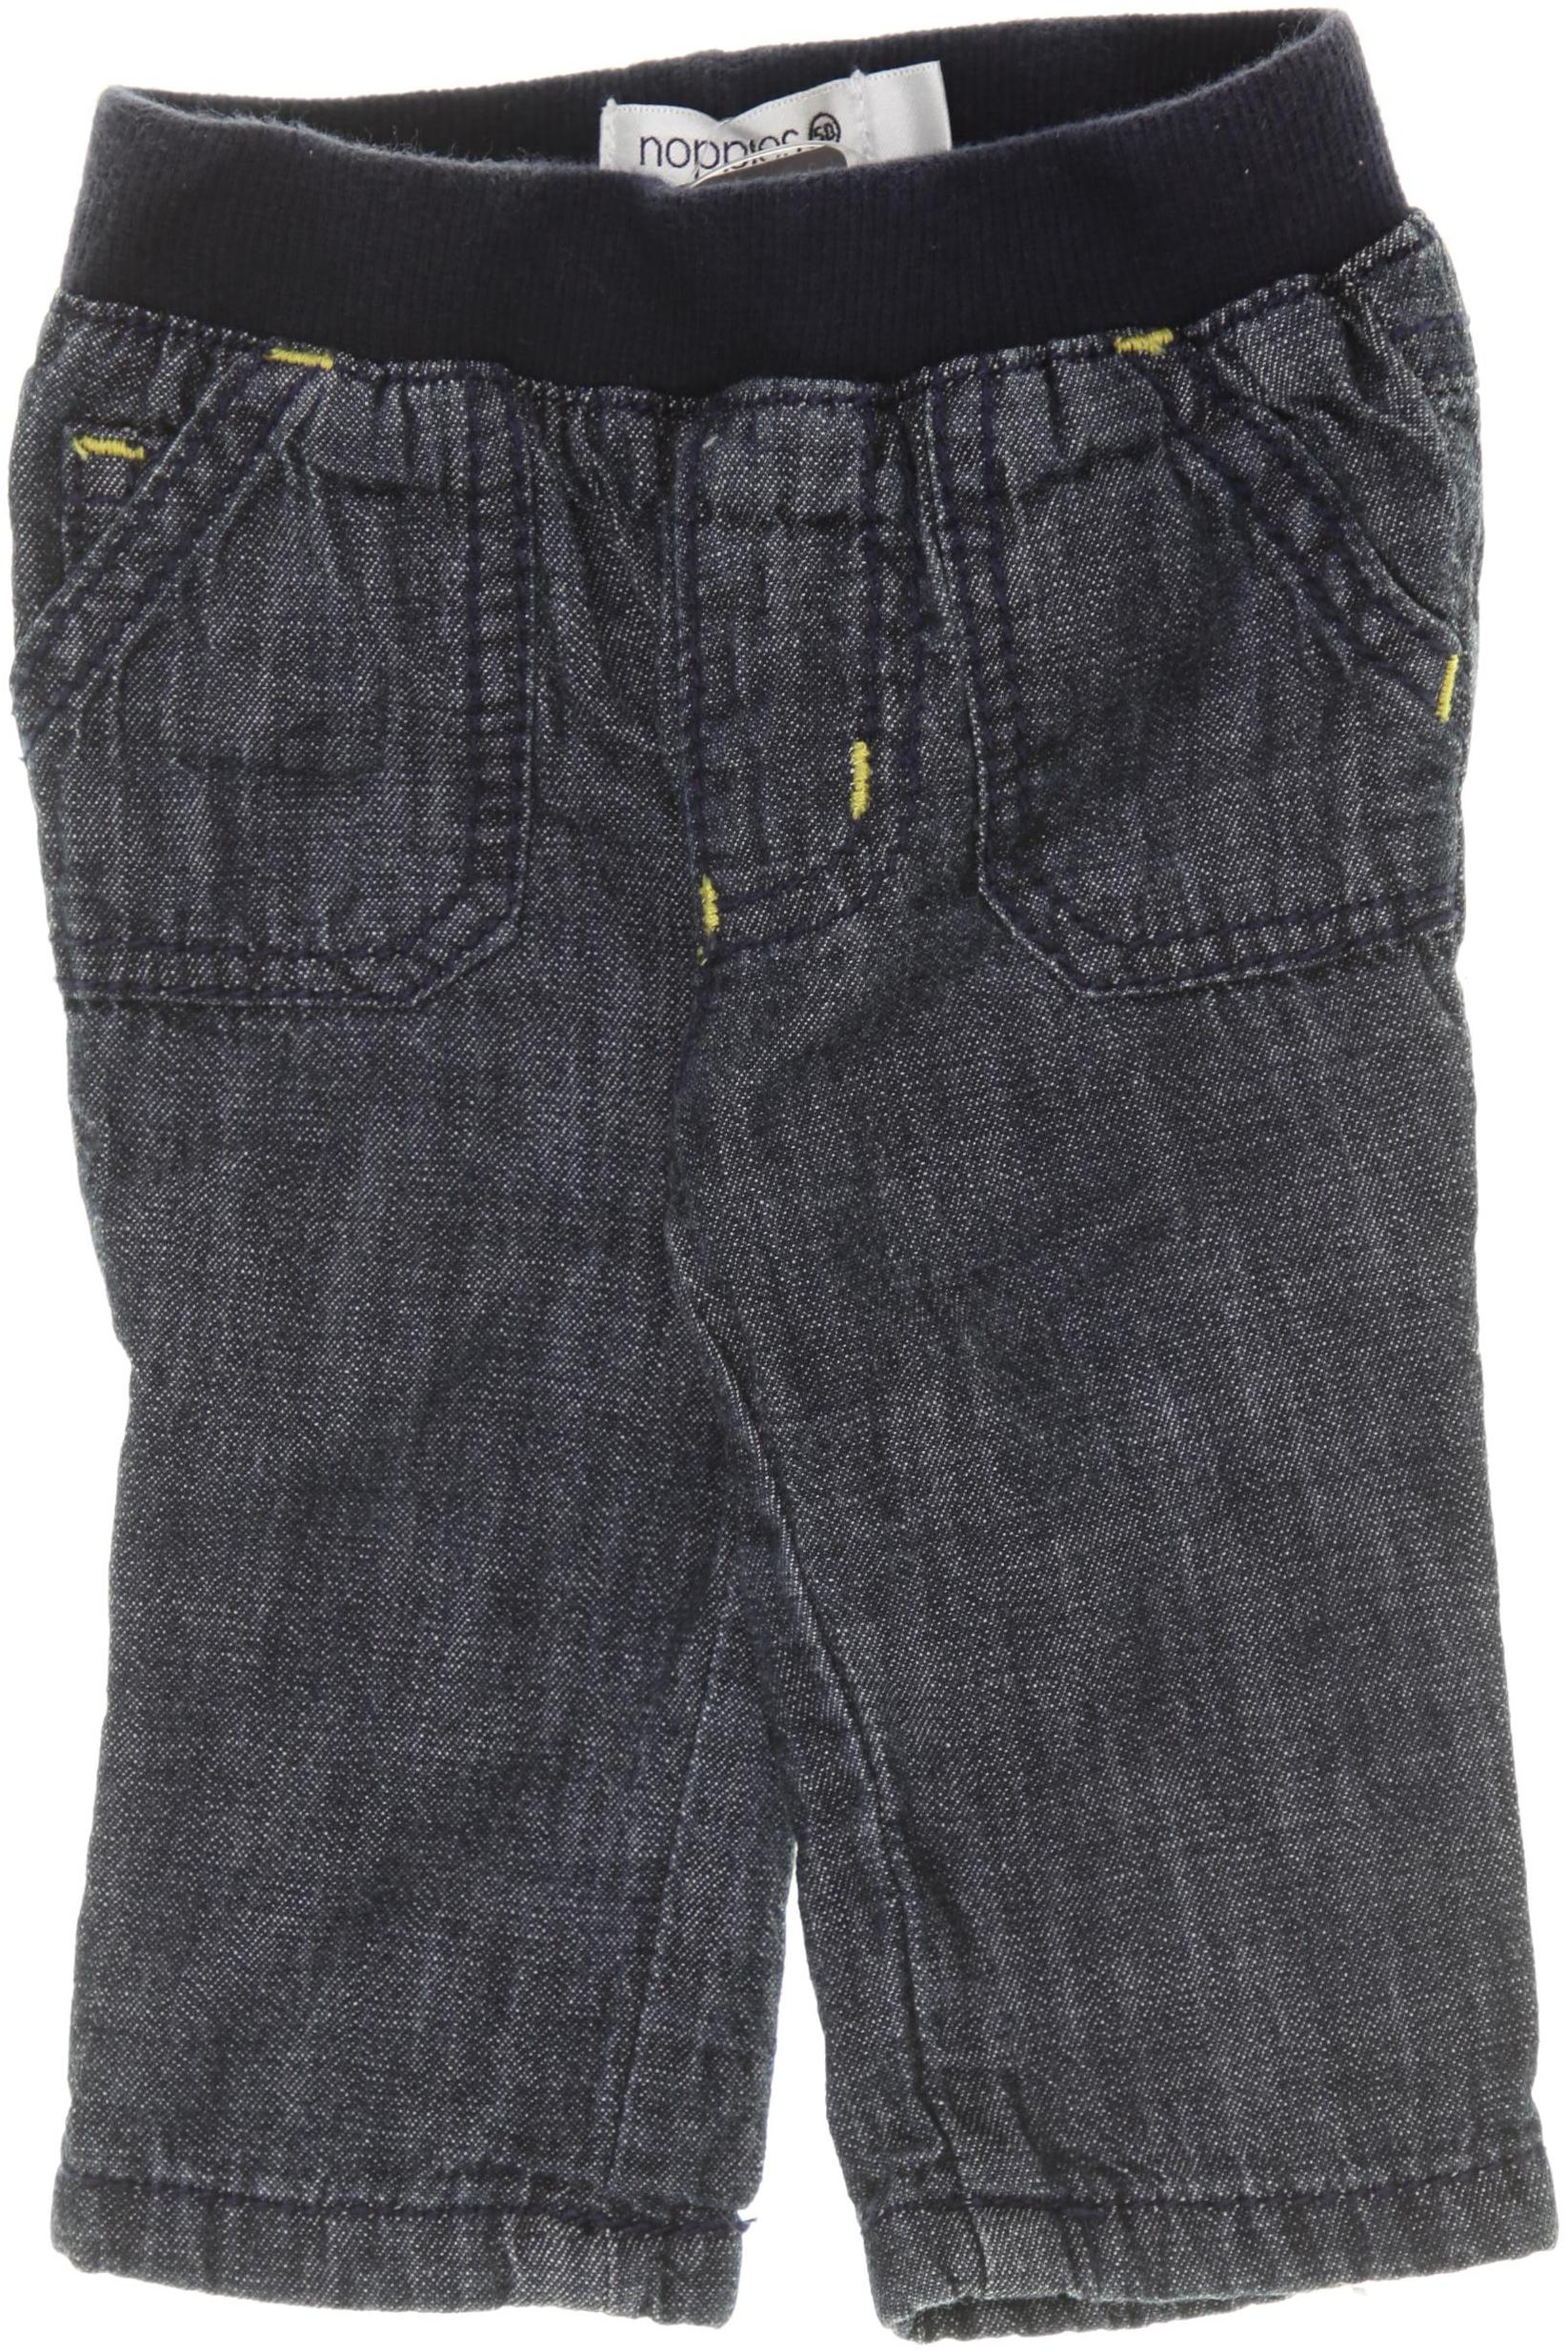 noppies Herren Jeans blau, DE 50, Baumwolle von Noppies